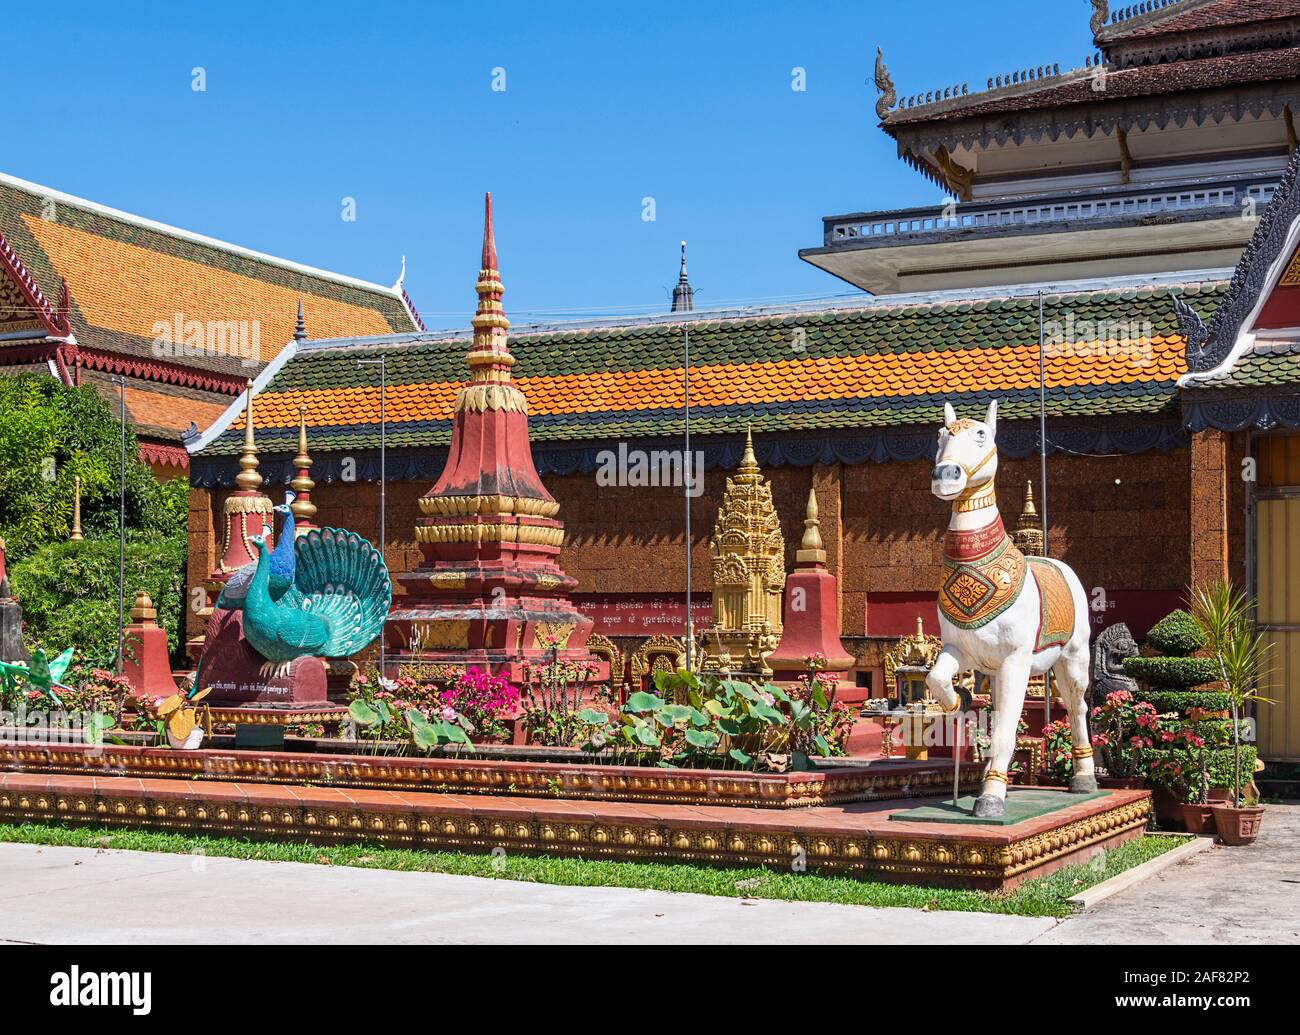 La Pagode Wat Preah Prom Rath, Siem Reap, Cambodge - cour avec les chevaux ornés Banque D'Images